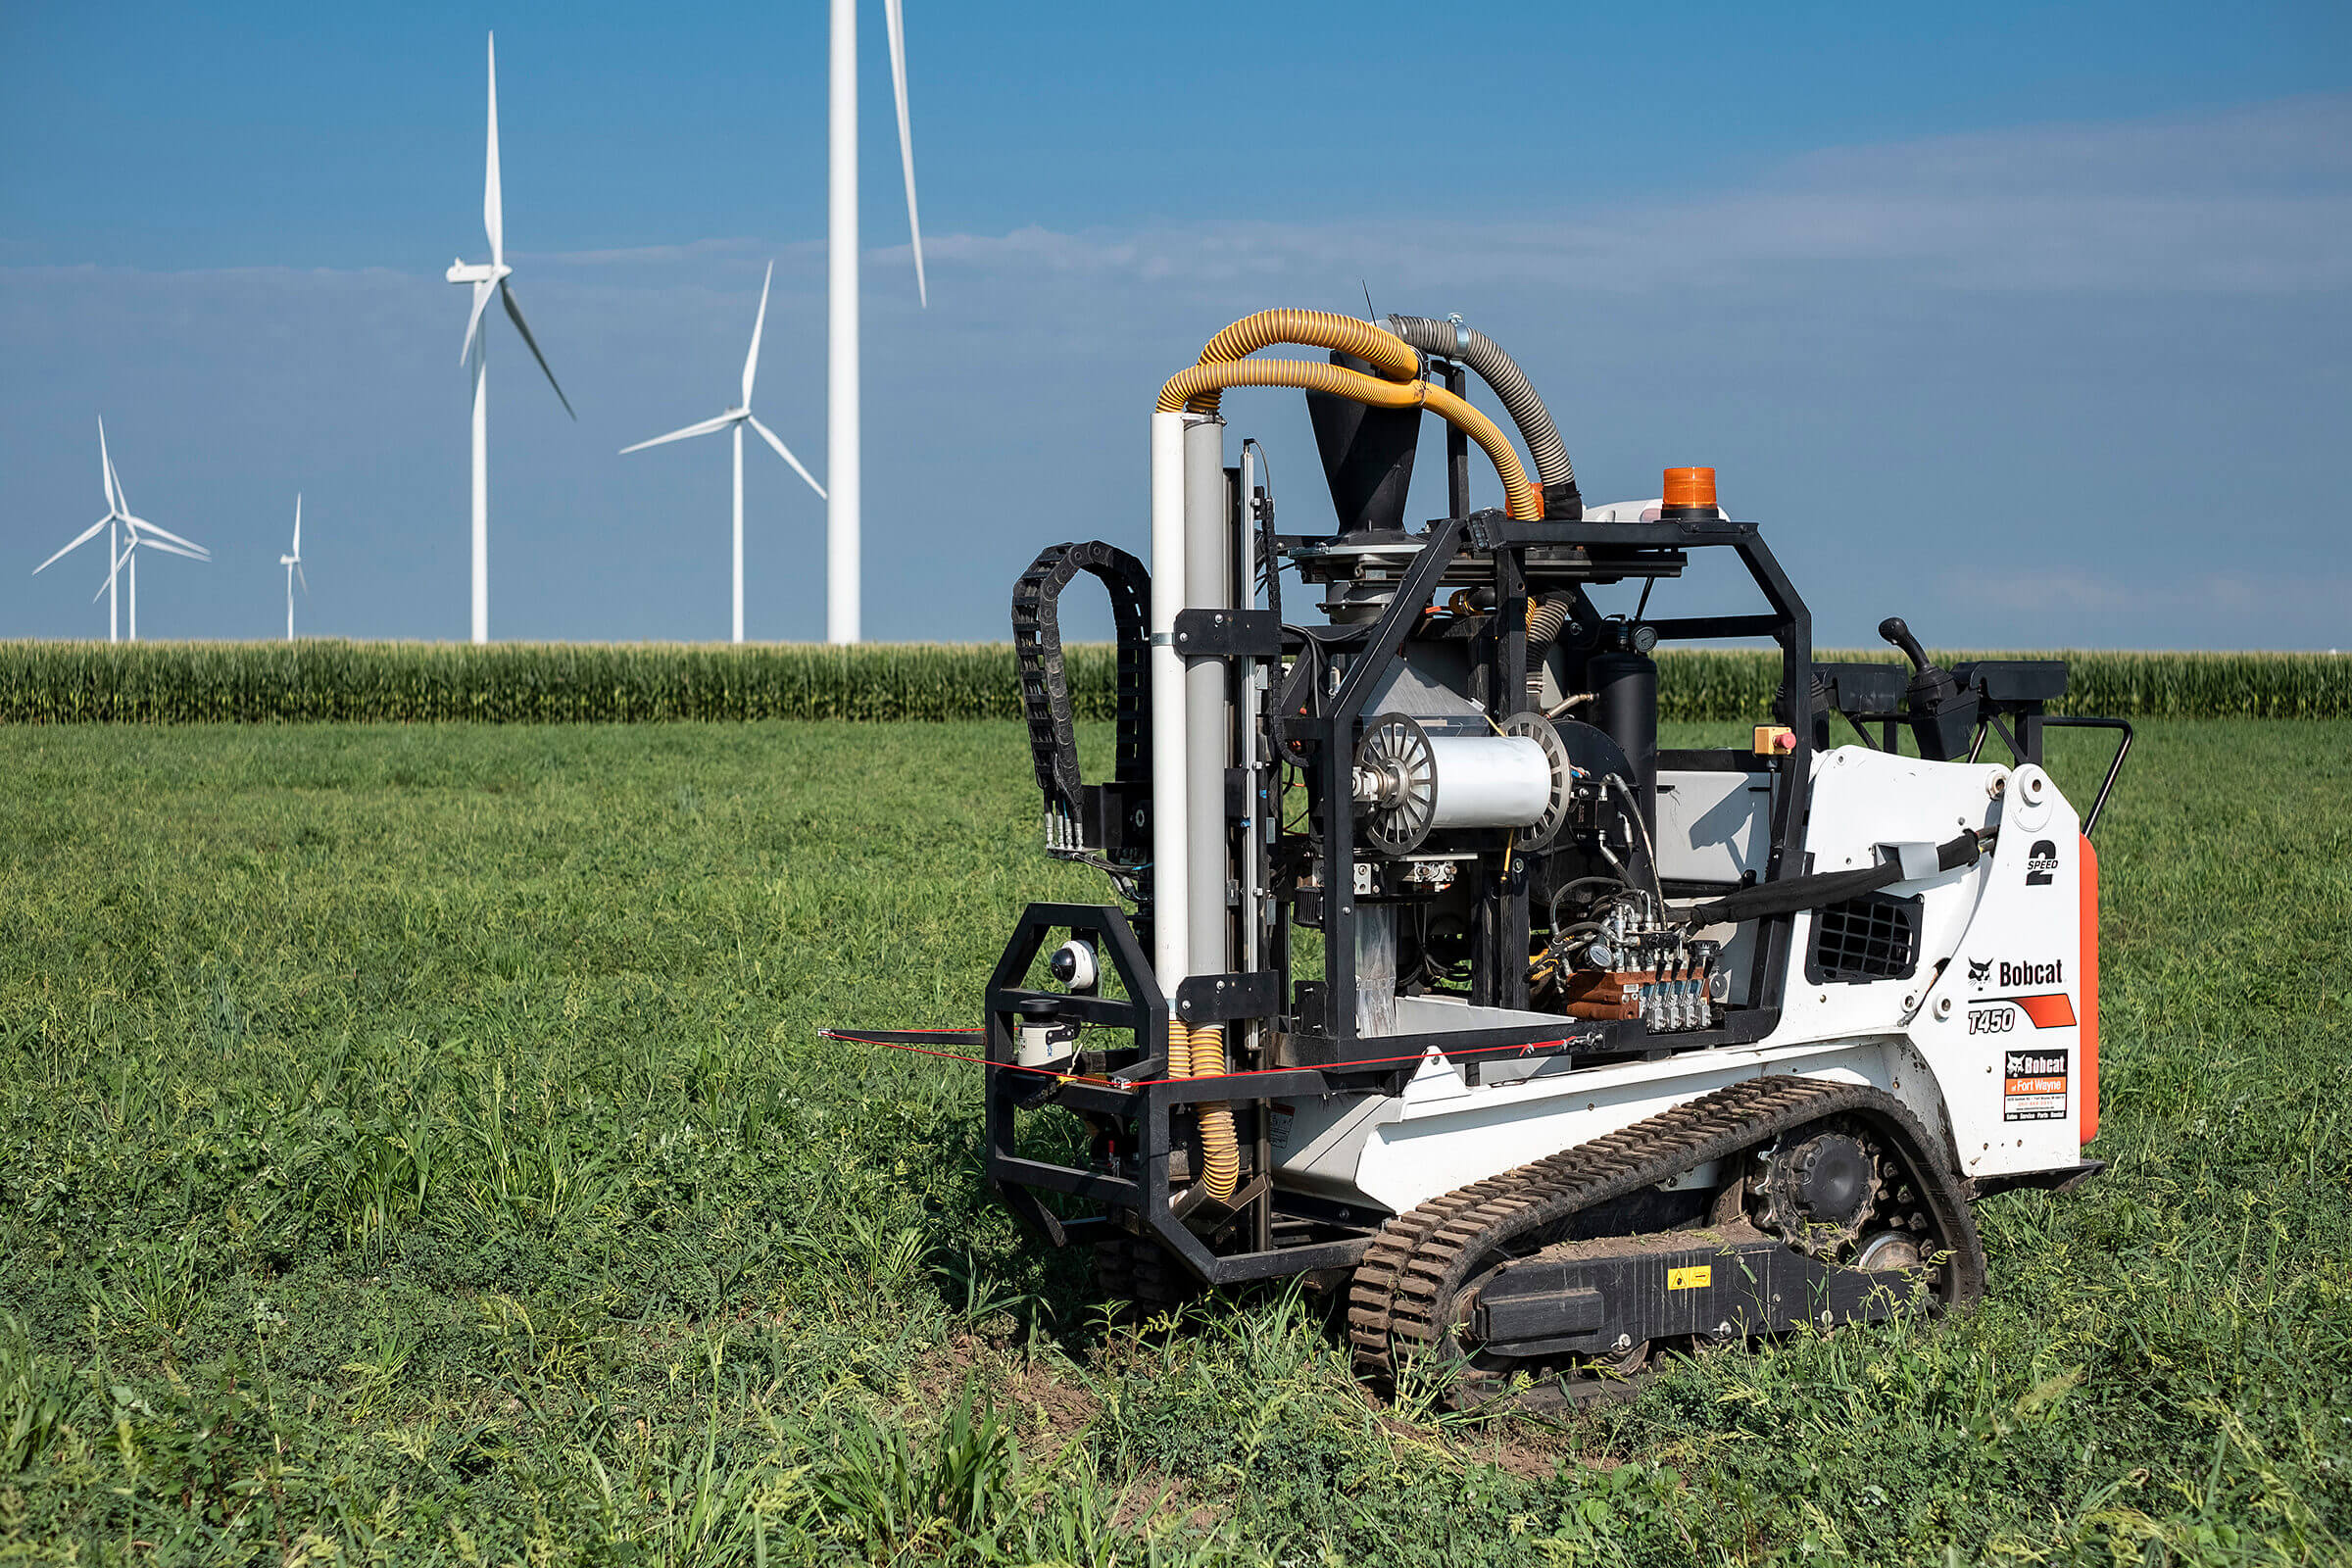 Autonomous robots fields to collect precise soil samples, help farmers improve environmental impact, save money - Purdue University News